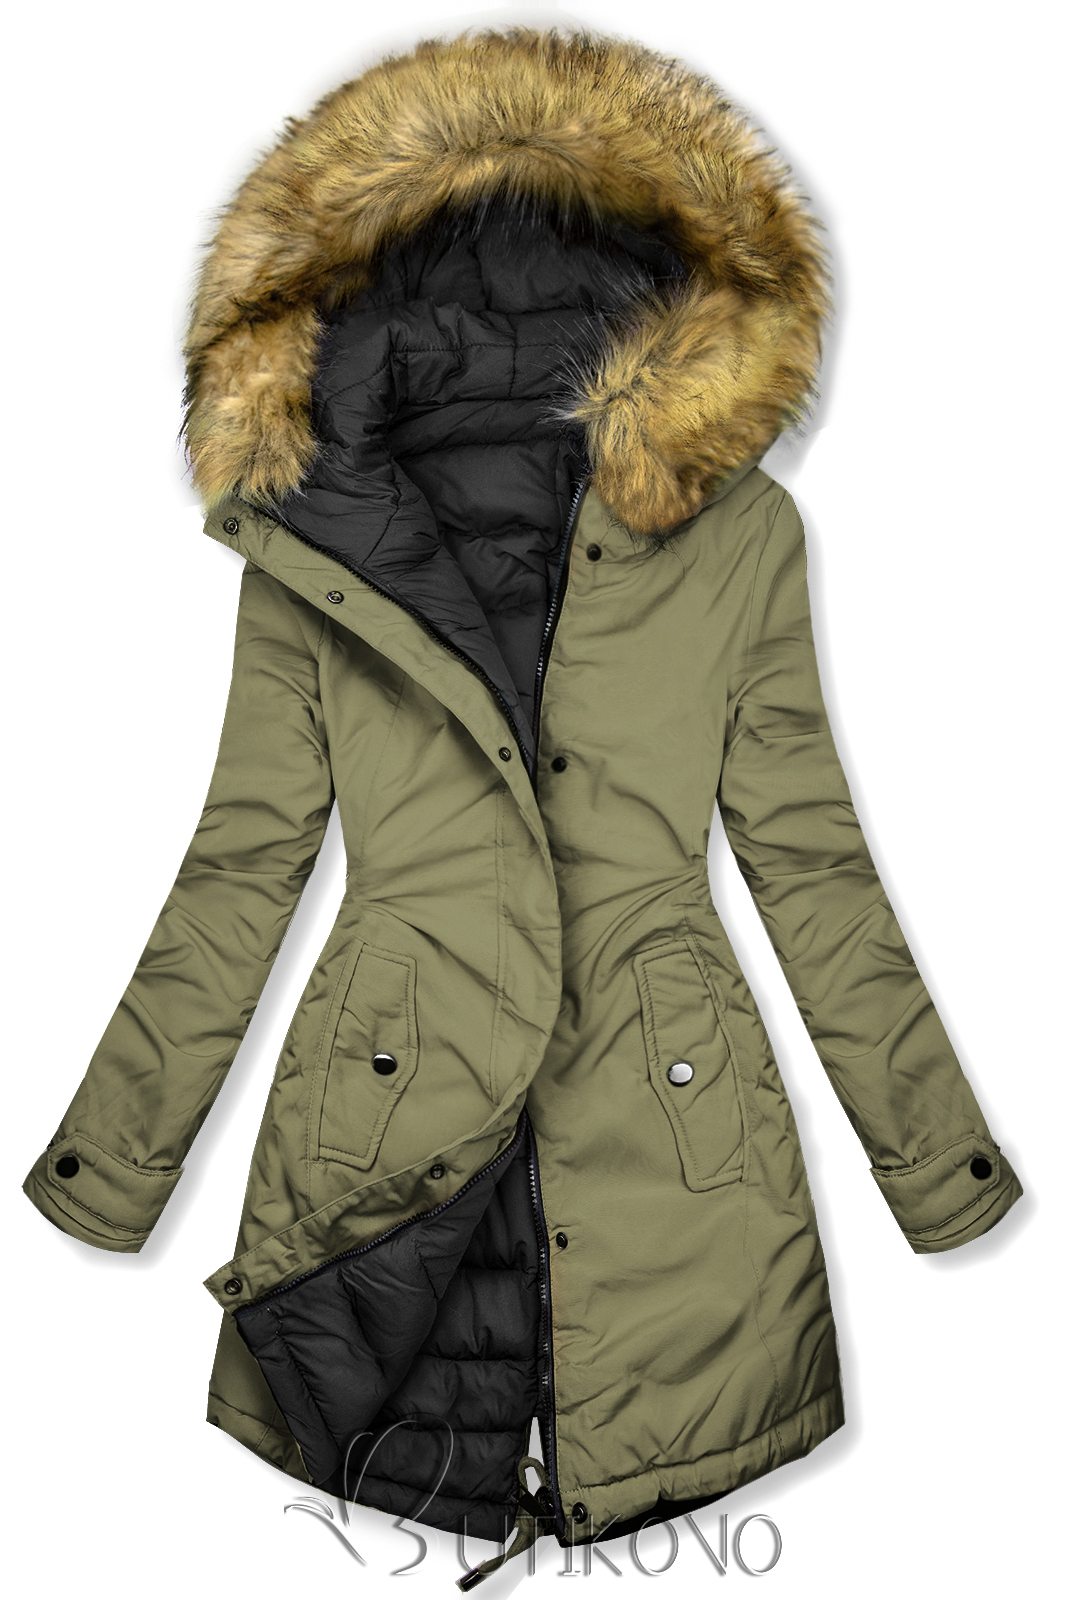 Obojstranná zimná bunda s kožušinou olivová/čierna